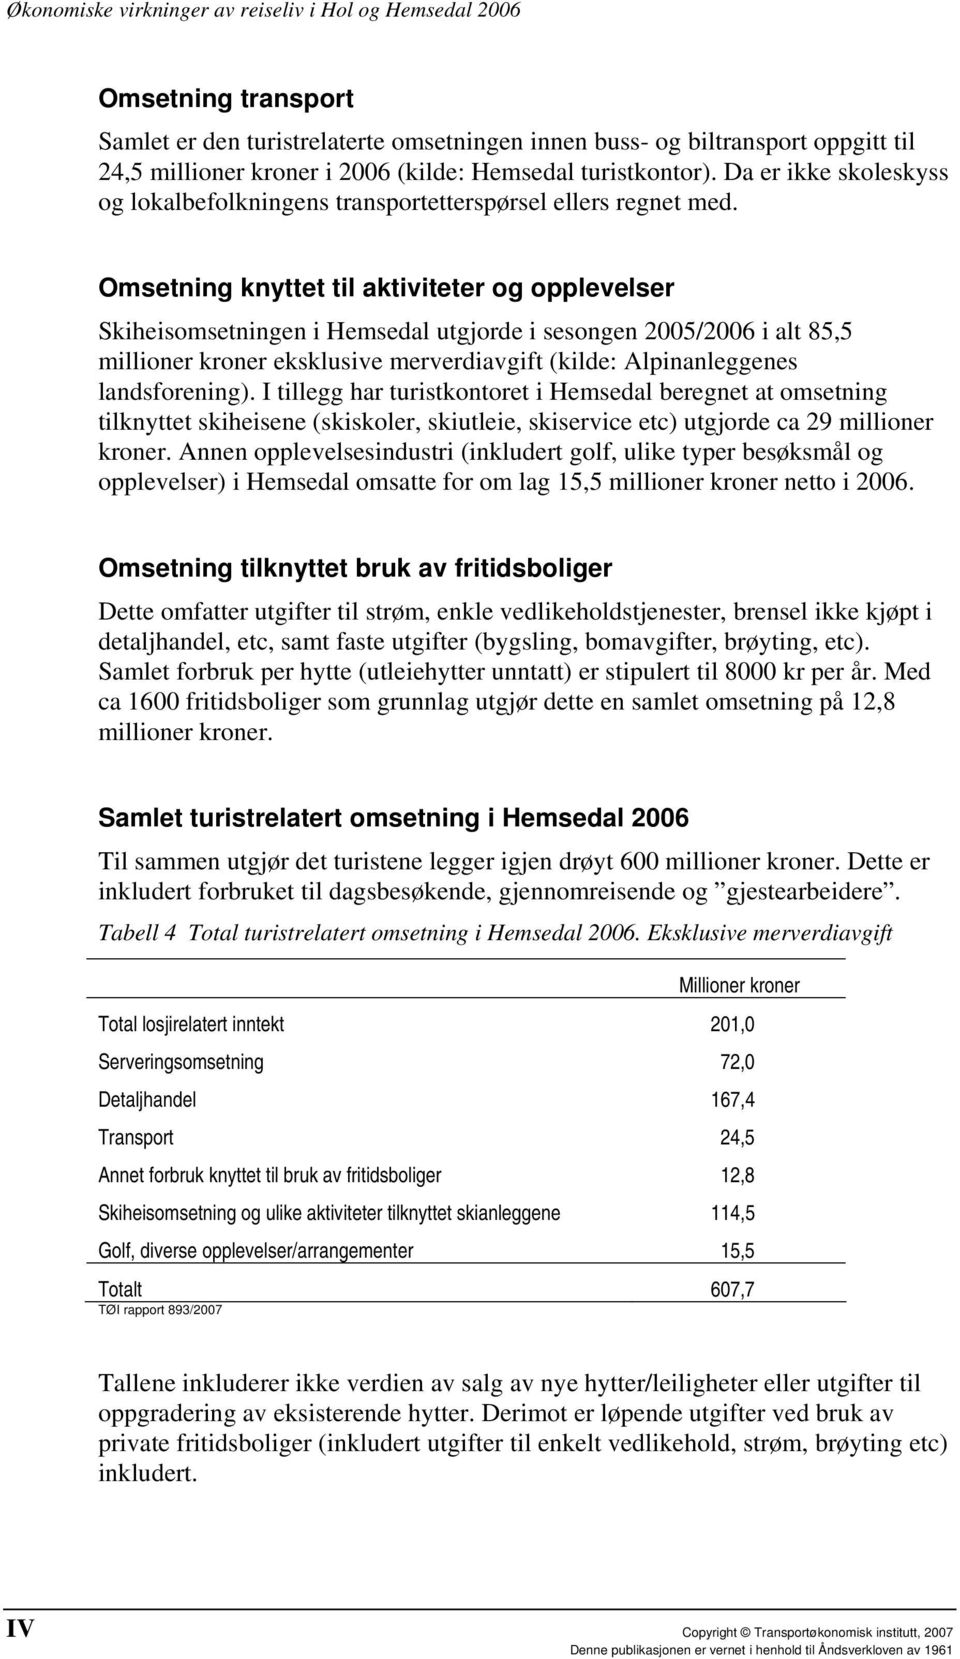 Omsetning knyttet til aktiviteter og opplevelser Skiheisomsetningen i Hemsedal utgjorde i sesongen 2005/2006 i alt 85,5 millioner kroner eksklusive merverdiavgift (kilde: Alpinanleggenes